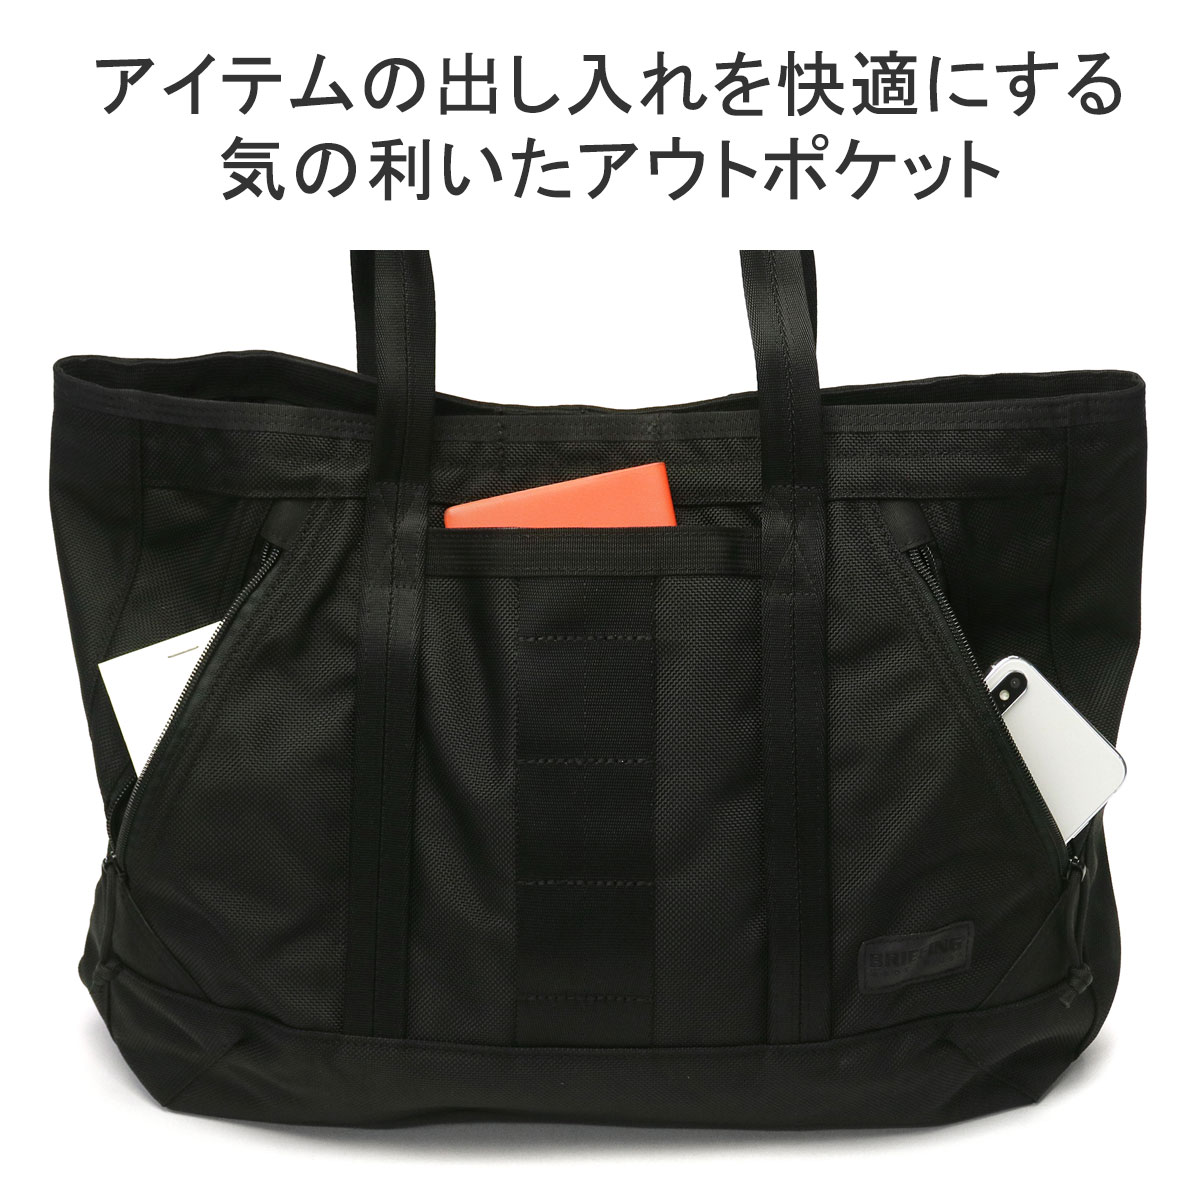 最大40%☆4/7限定 日本正規品 ブリーフィング トートバッグ メンズ 